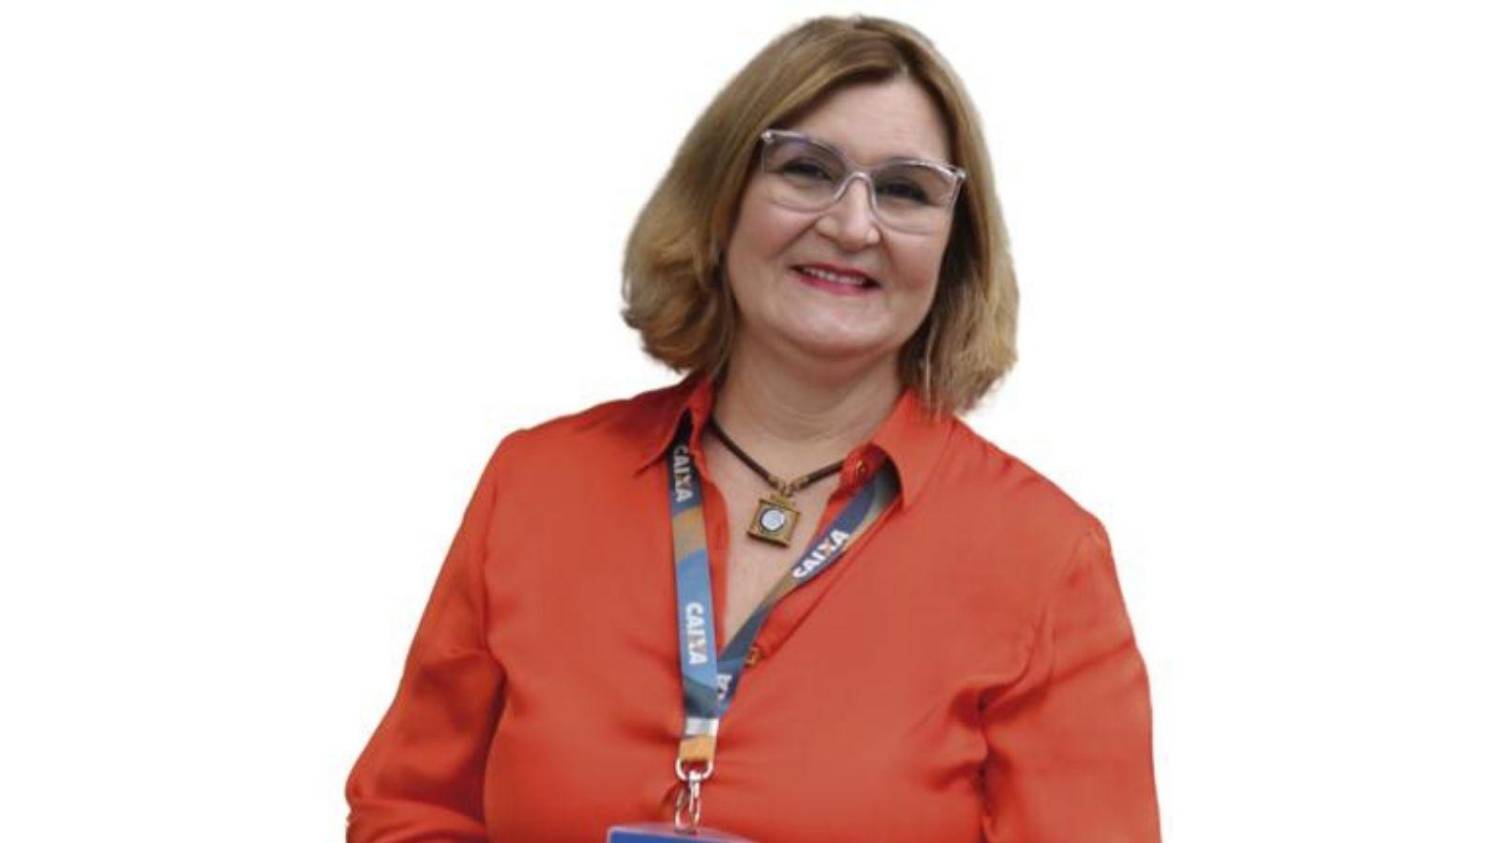 Sindicato apoia Rita Serrano no Conselho da Caixa e defende o banco Público